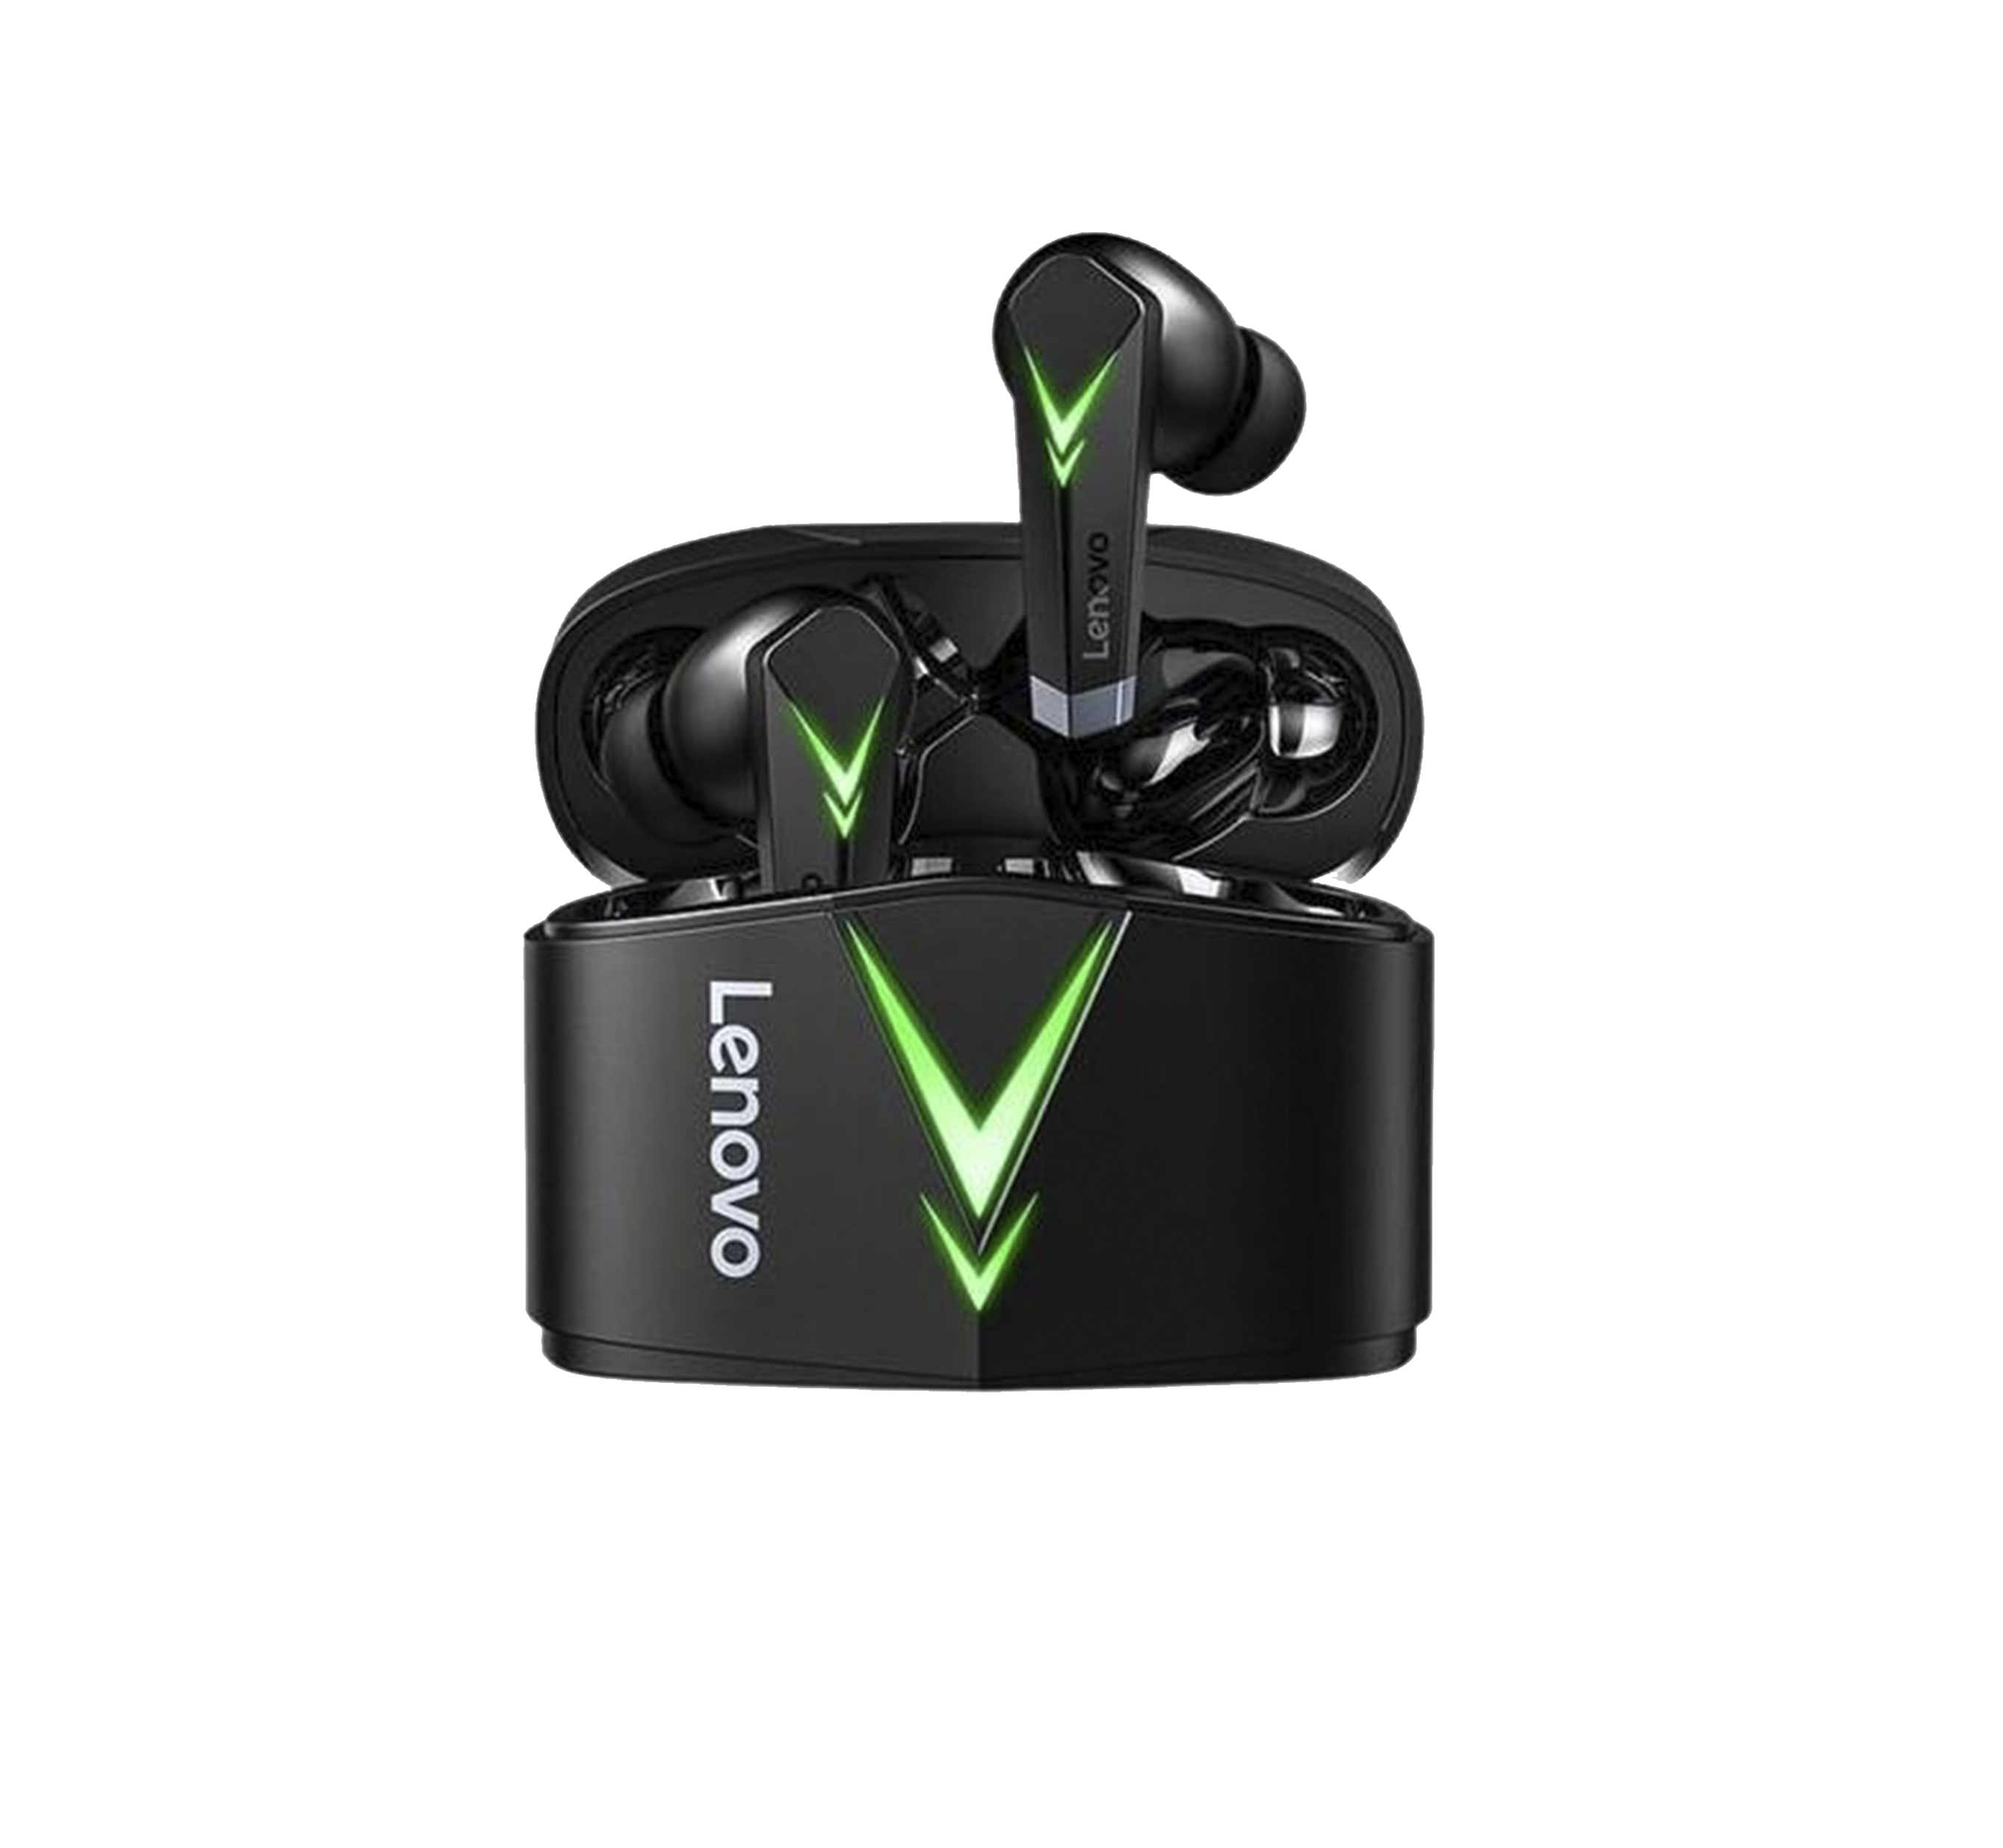 Audífonos In-ear Gamer Inalámbricos Lenovo Livepods Lp6 - Nitro Systems